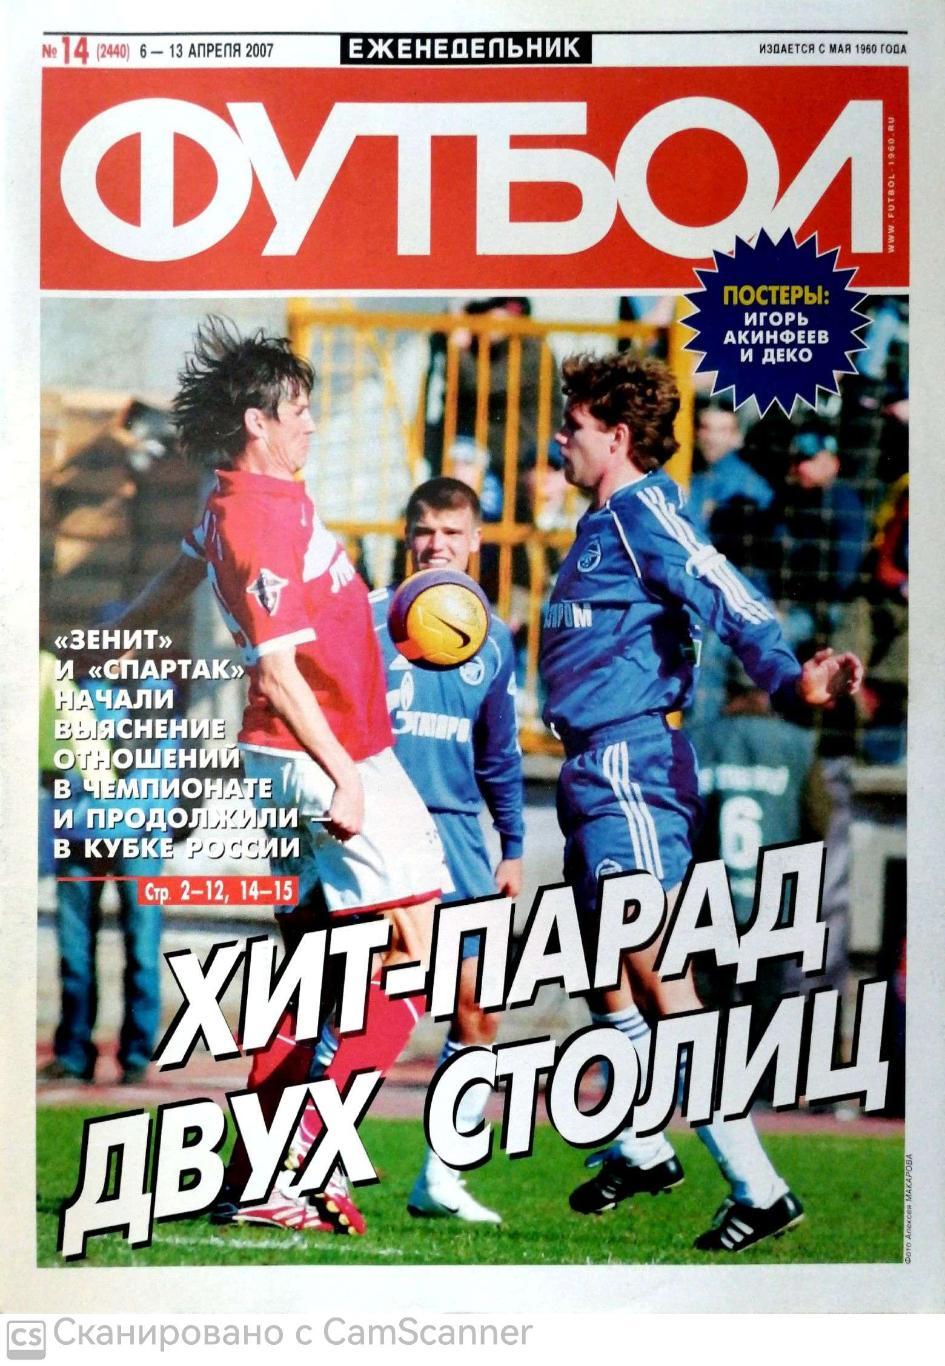 Еженедельник «Футбол» (Москва). 2007 год. №14 постер акинфеев